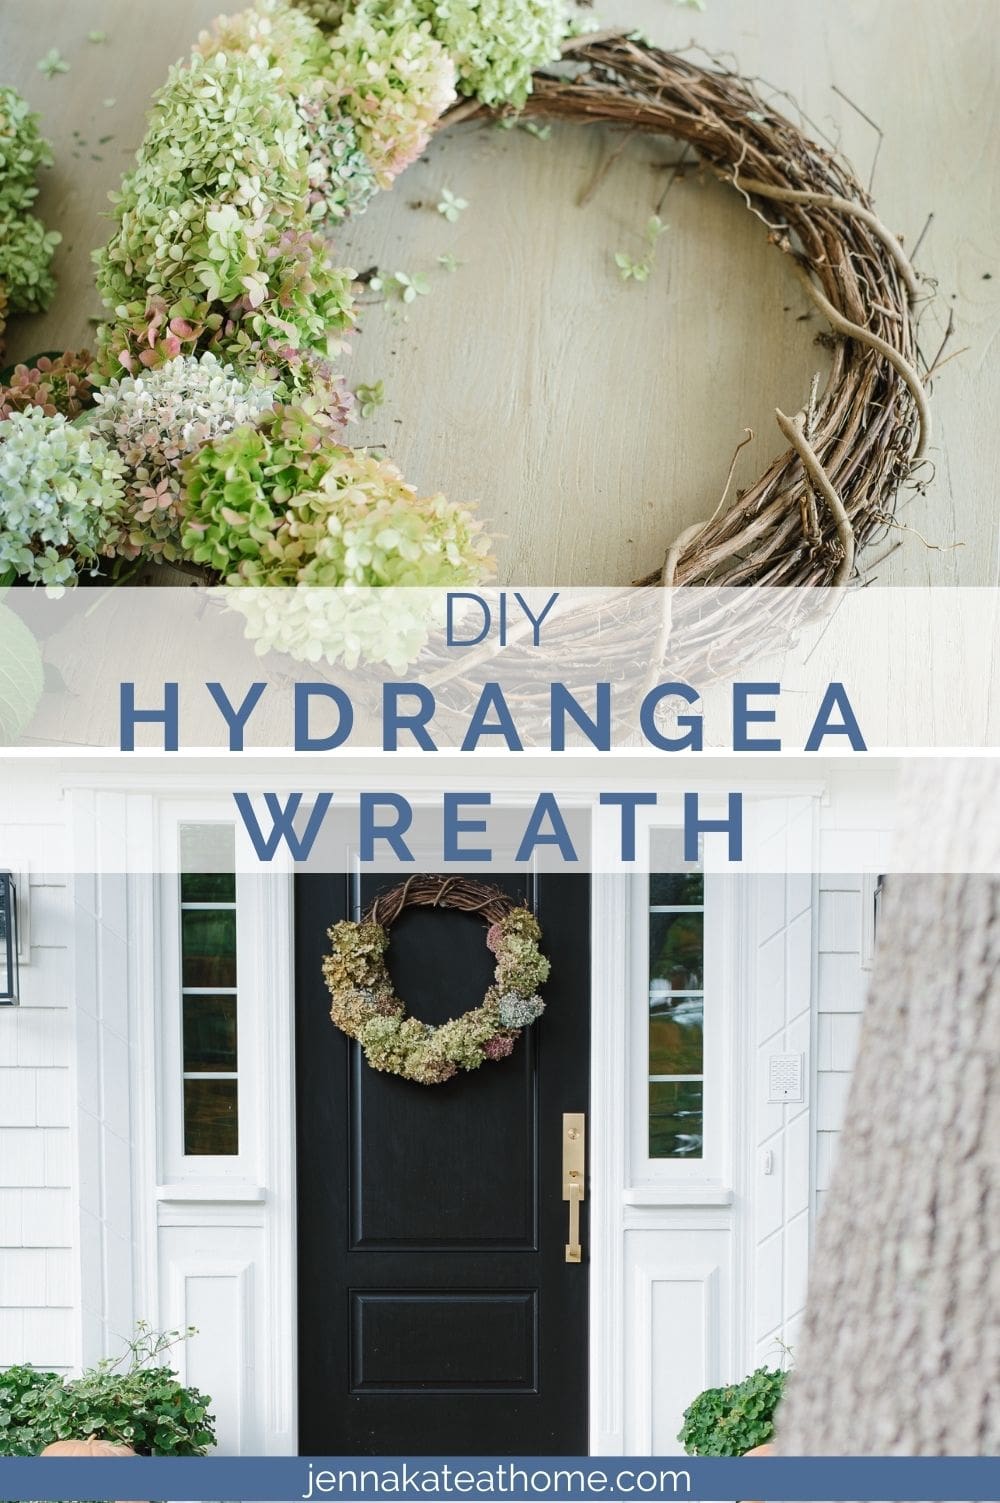 DIY Hydrangea wreath